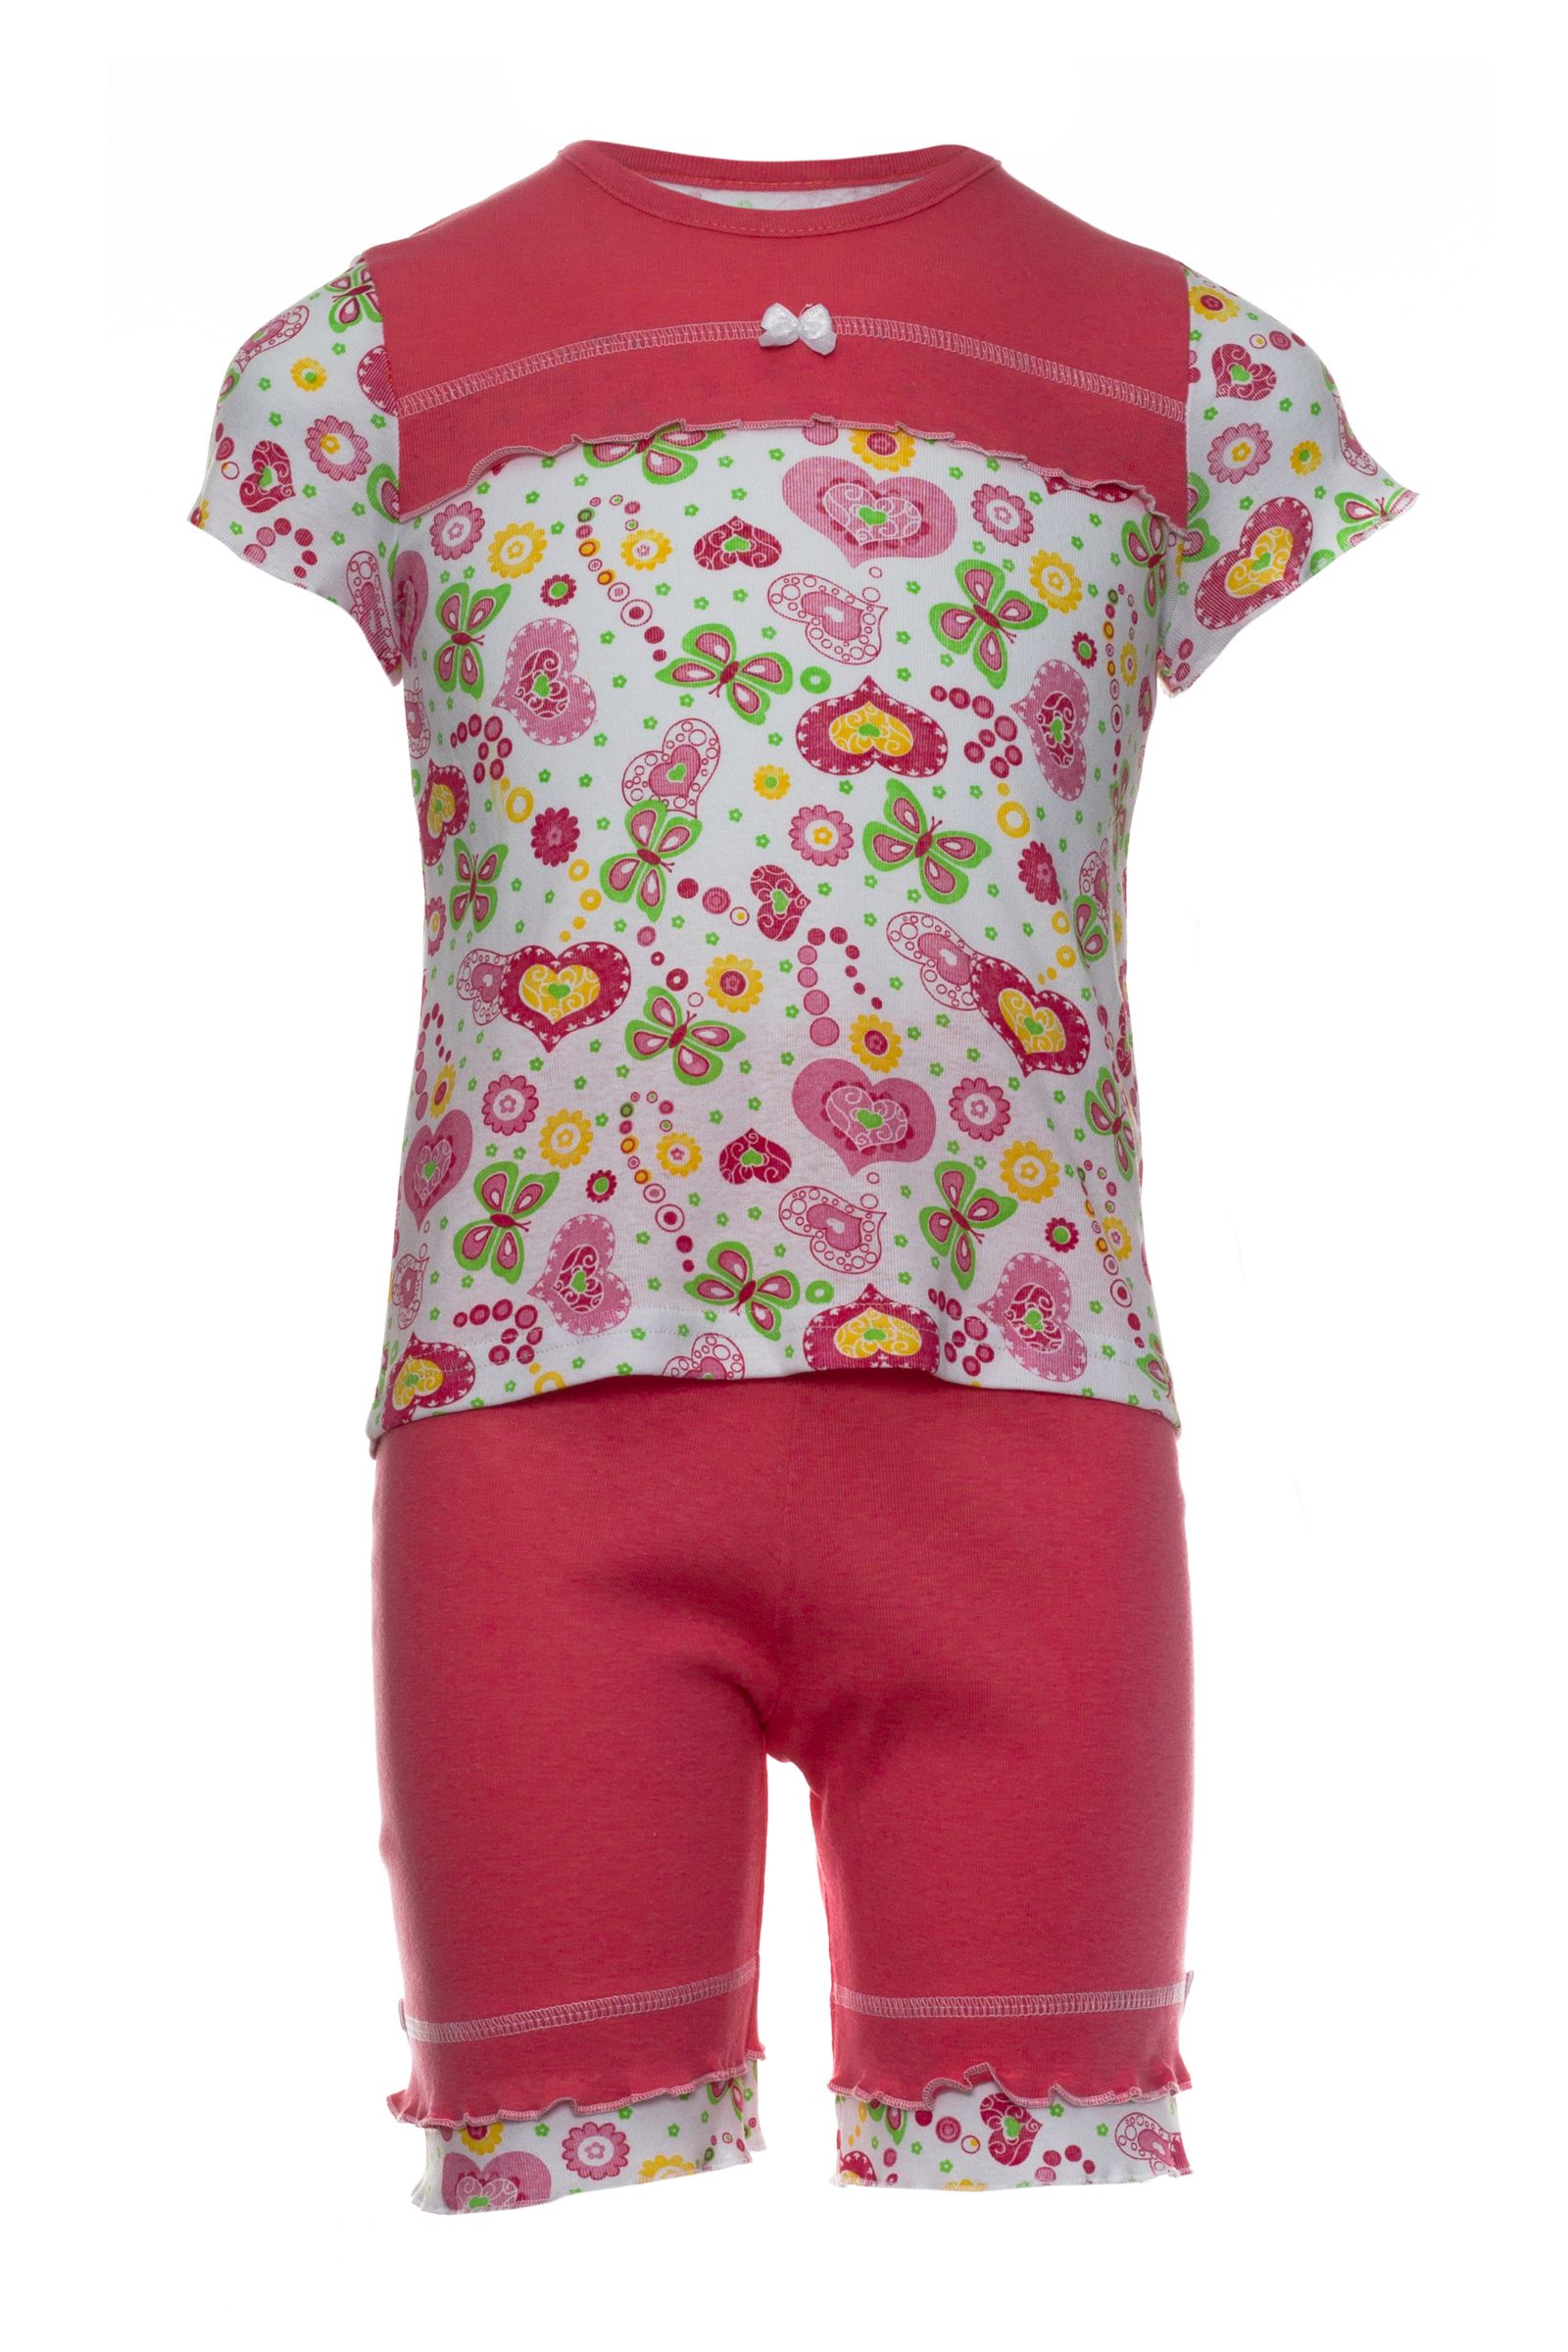 Пижама-ПЖ03-707 оптом от производителя детской одежды 'Алёна'